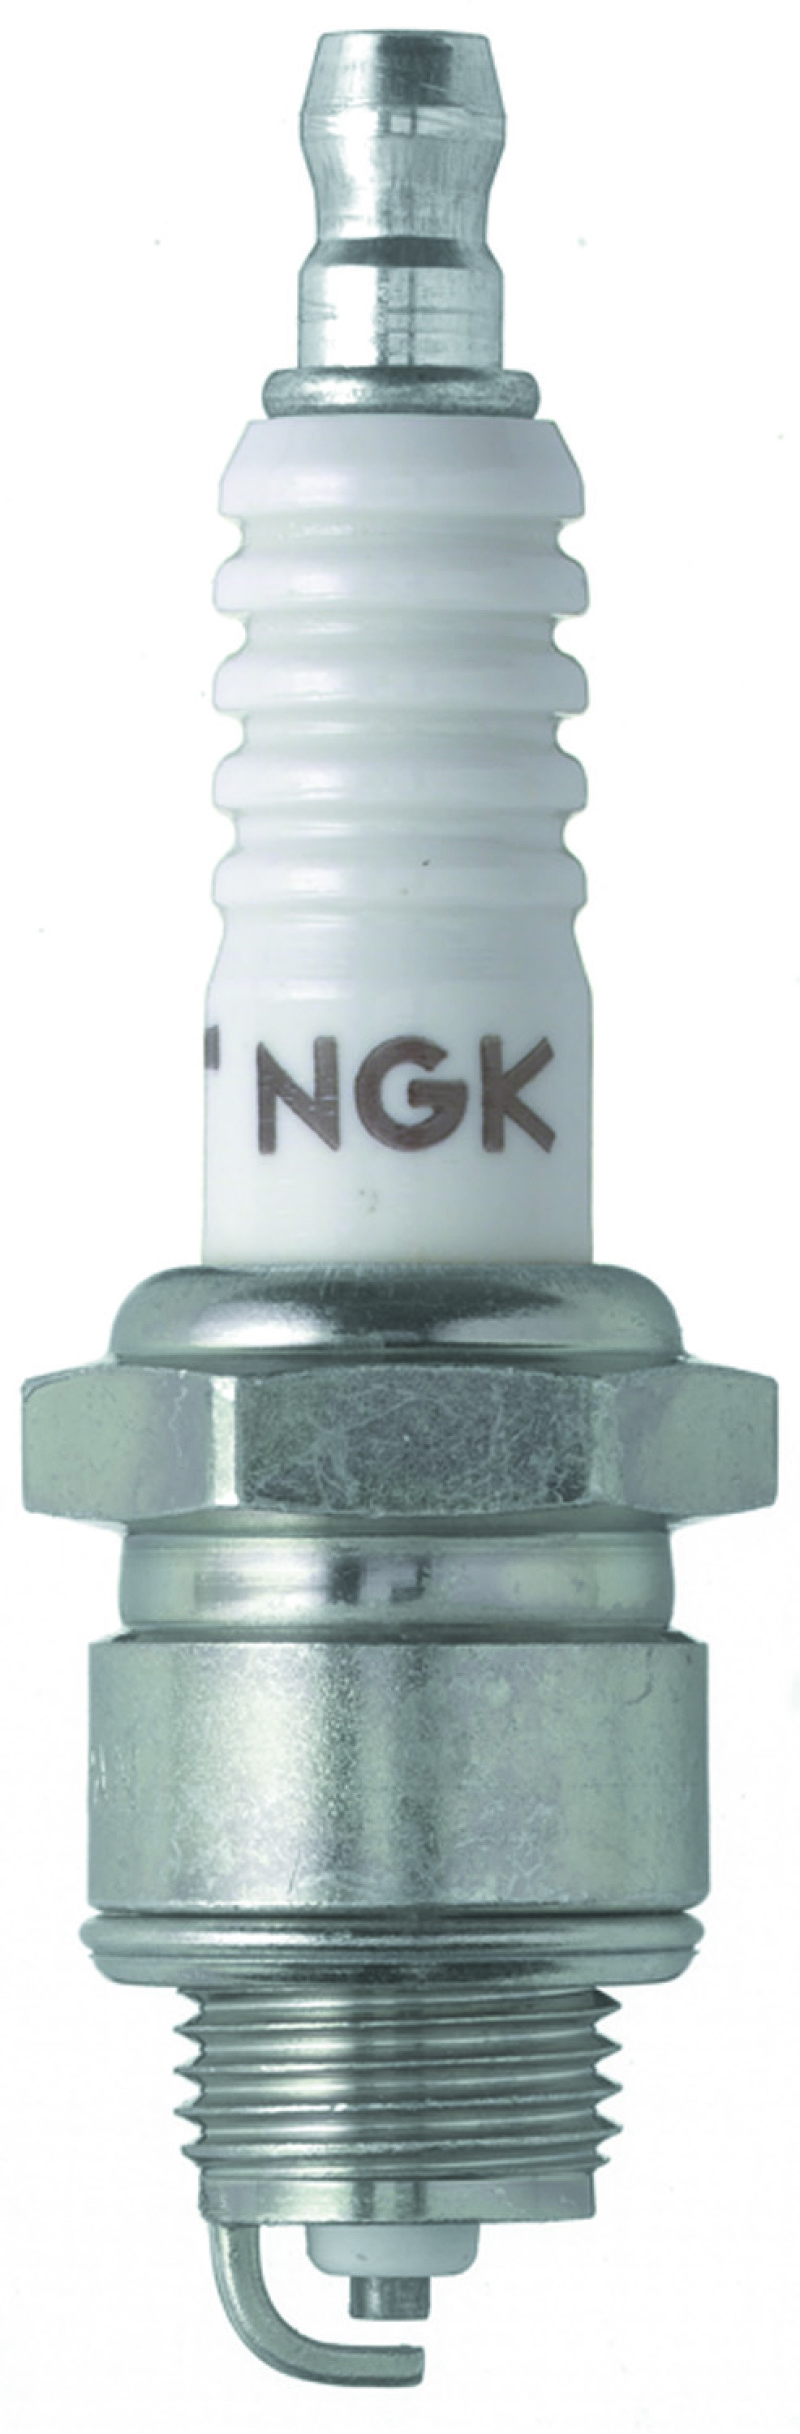 NGK Racing Spark Plug Box of 4 (R5670-9) - 3913